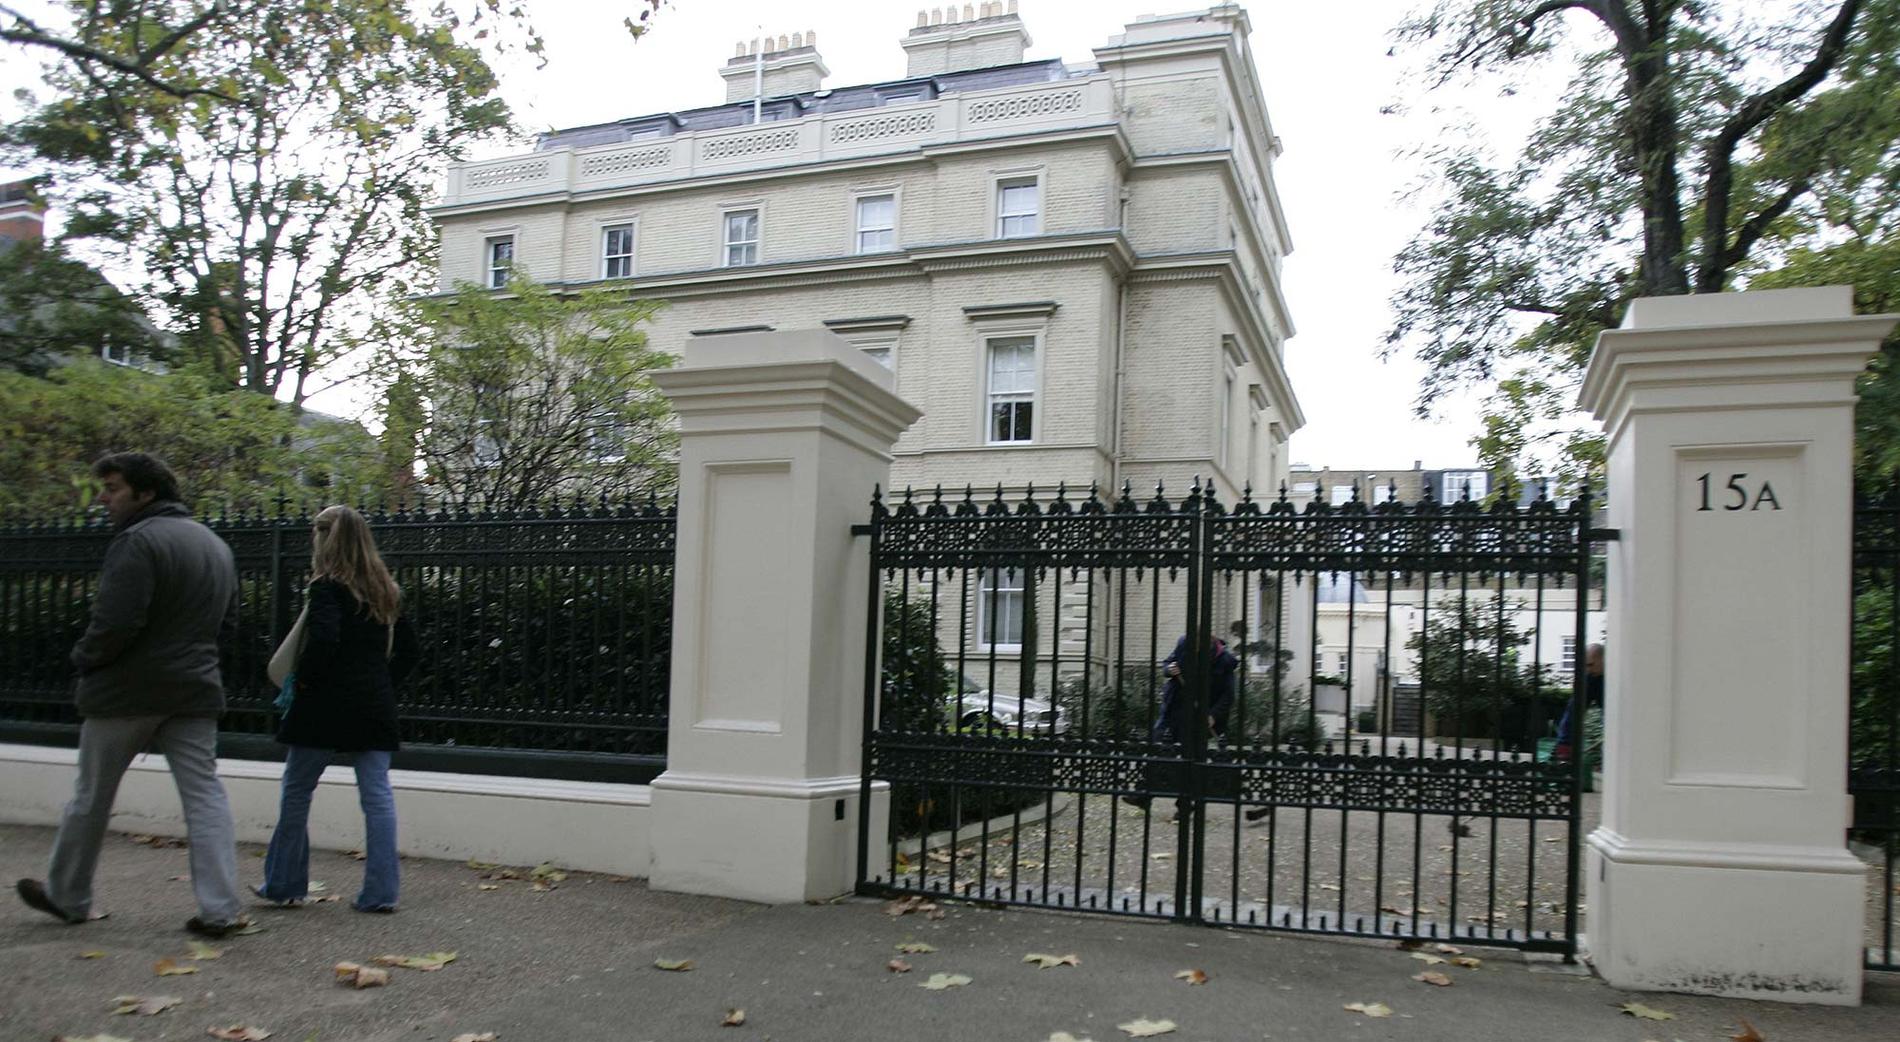 Tvåa på listan hamnar Kensington Palace Gardens som har fått smeknamnet miljardärslängan (billionaire's row).